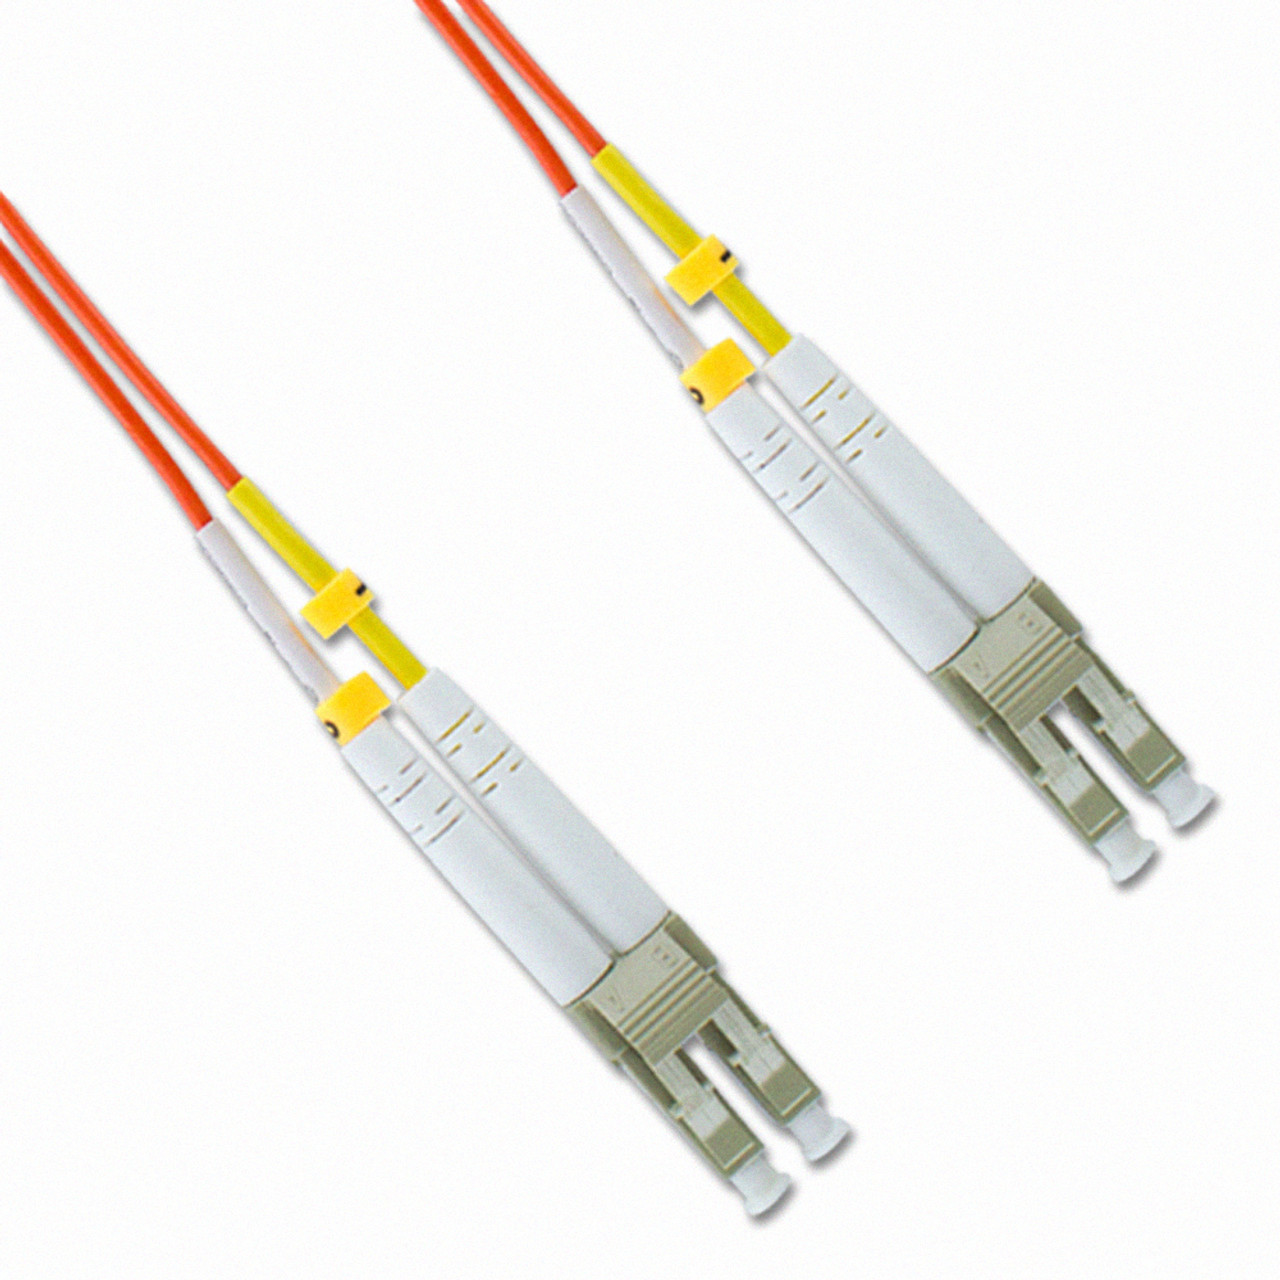 NavePoint LC-LC Fiber Optic Cable Duplex 50/125 Multimode 200M Orange